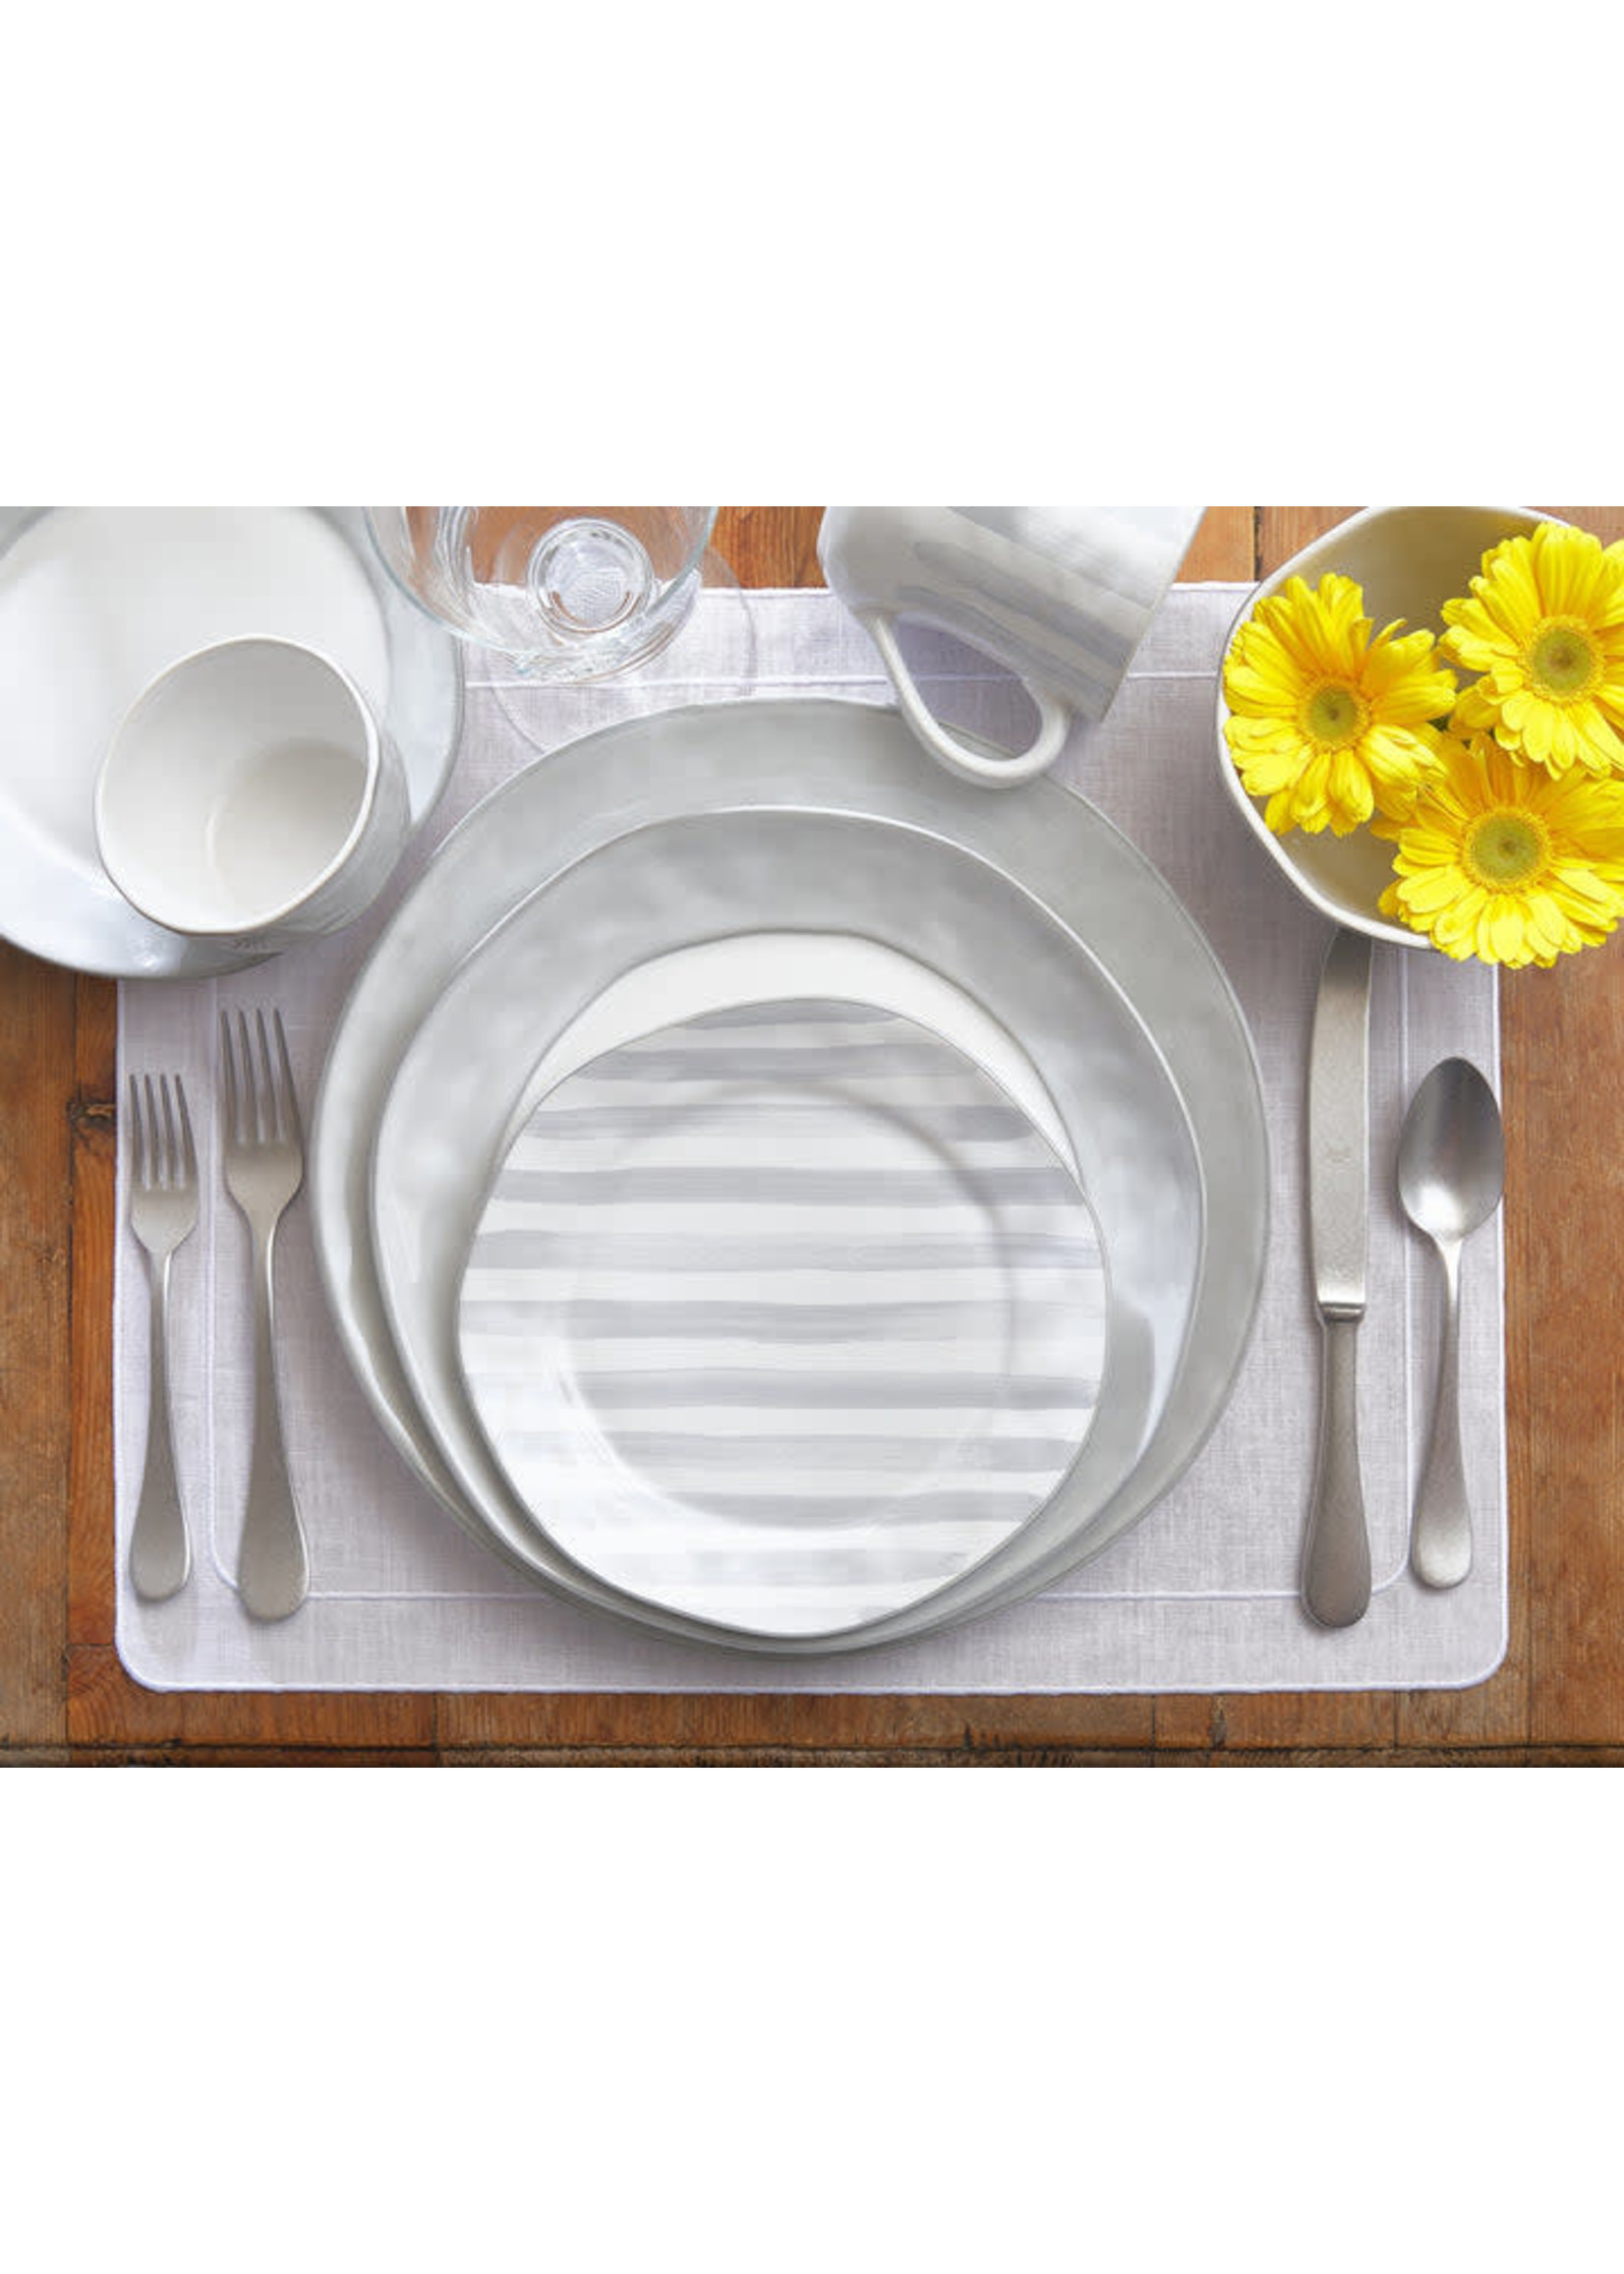 Skyros Skyros Azores Dinner Plate, Greige Shimmer